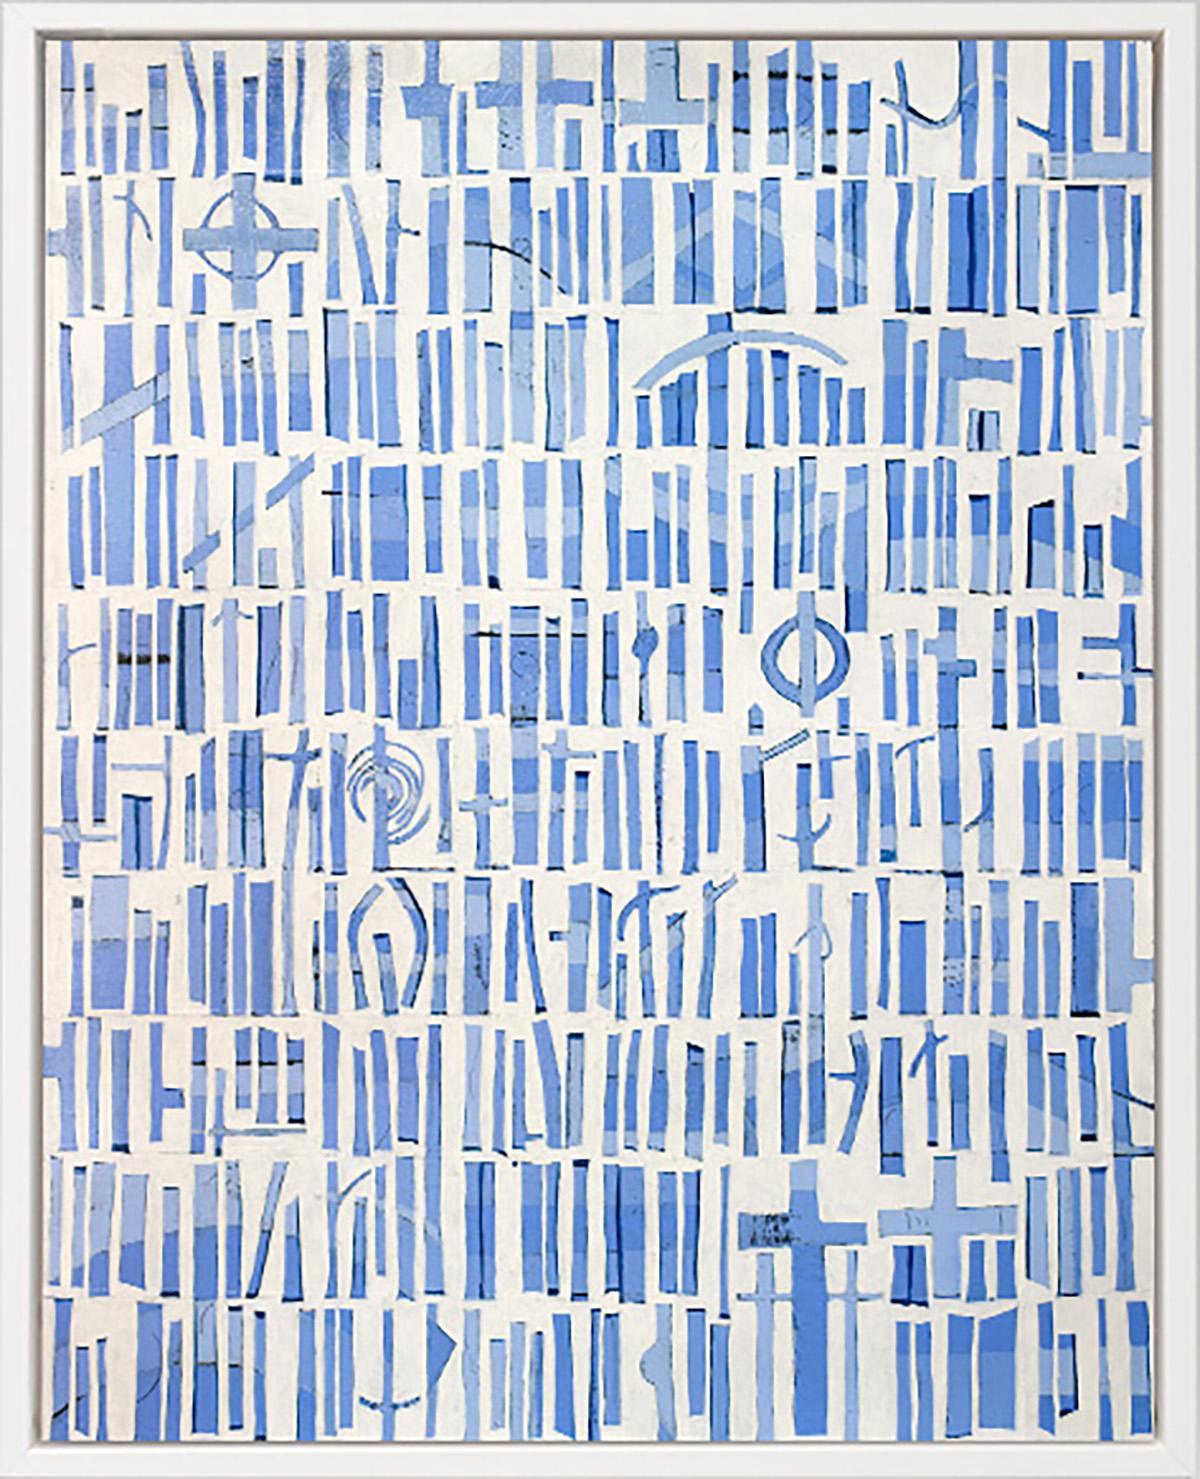 Abstract Print Sofie Swann - « Une journée d'été à Nantucket » Impression giclée en édition limitée, 30" x 24"